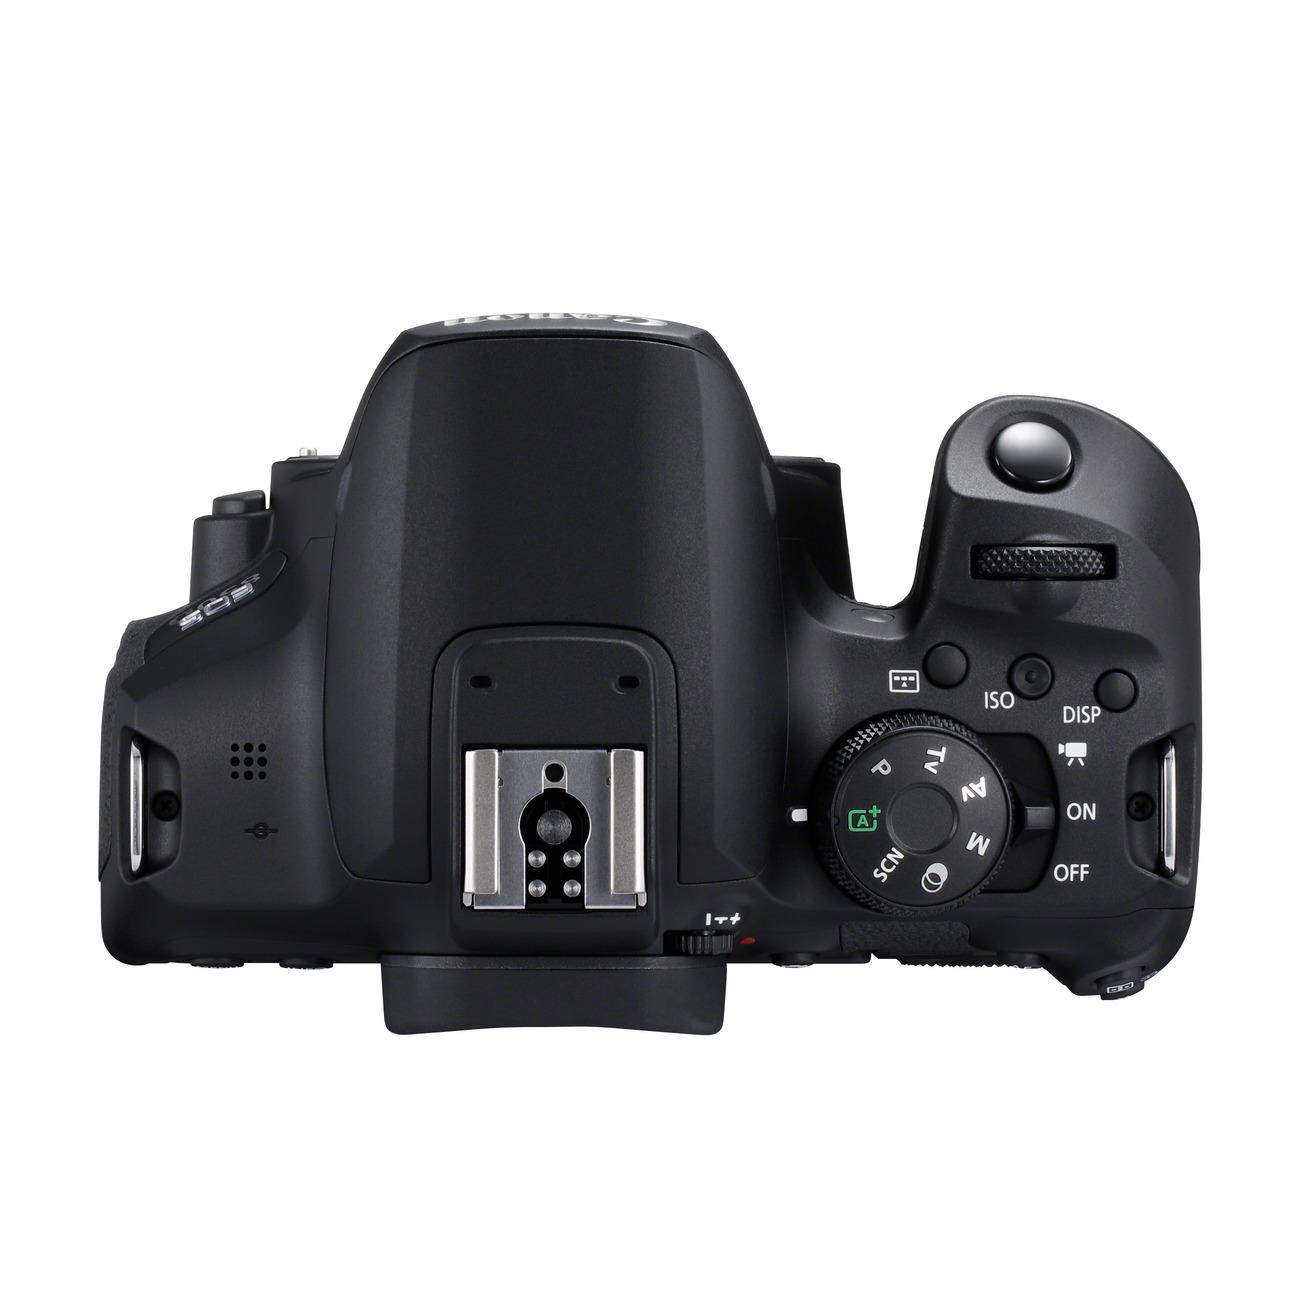 Canon выпустила зеркальный фотоаппарат EOS 850D